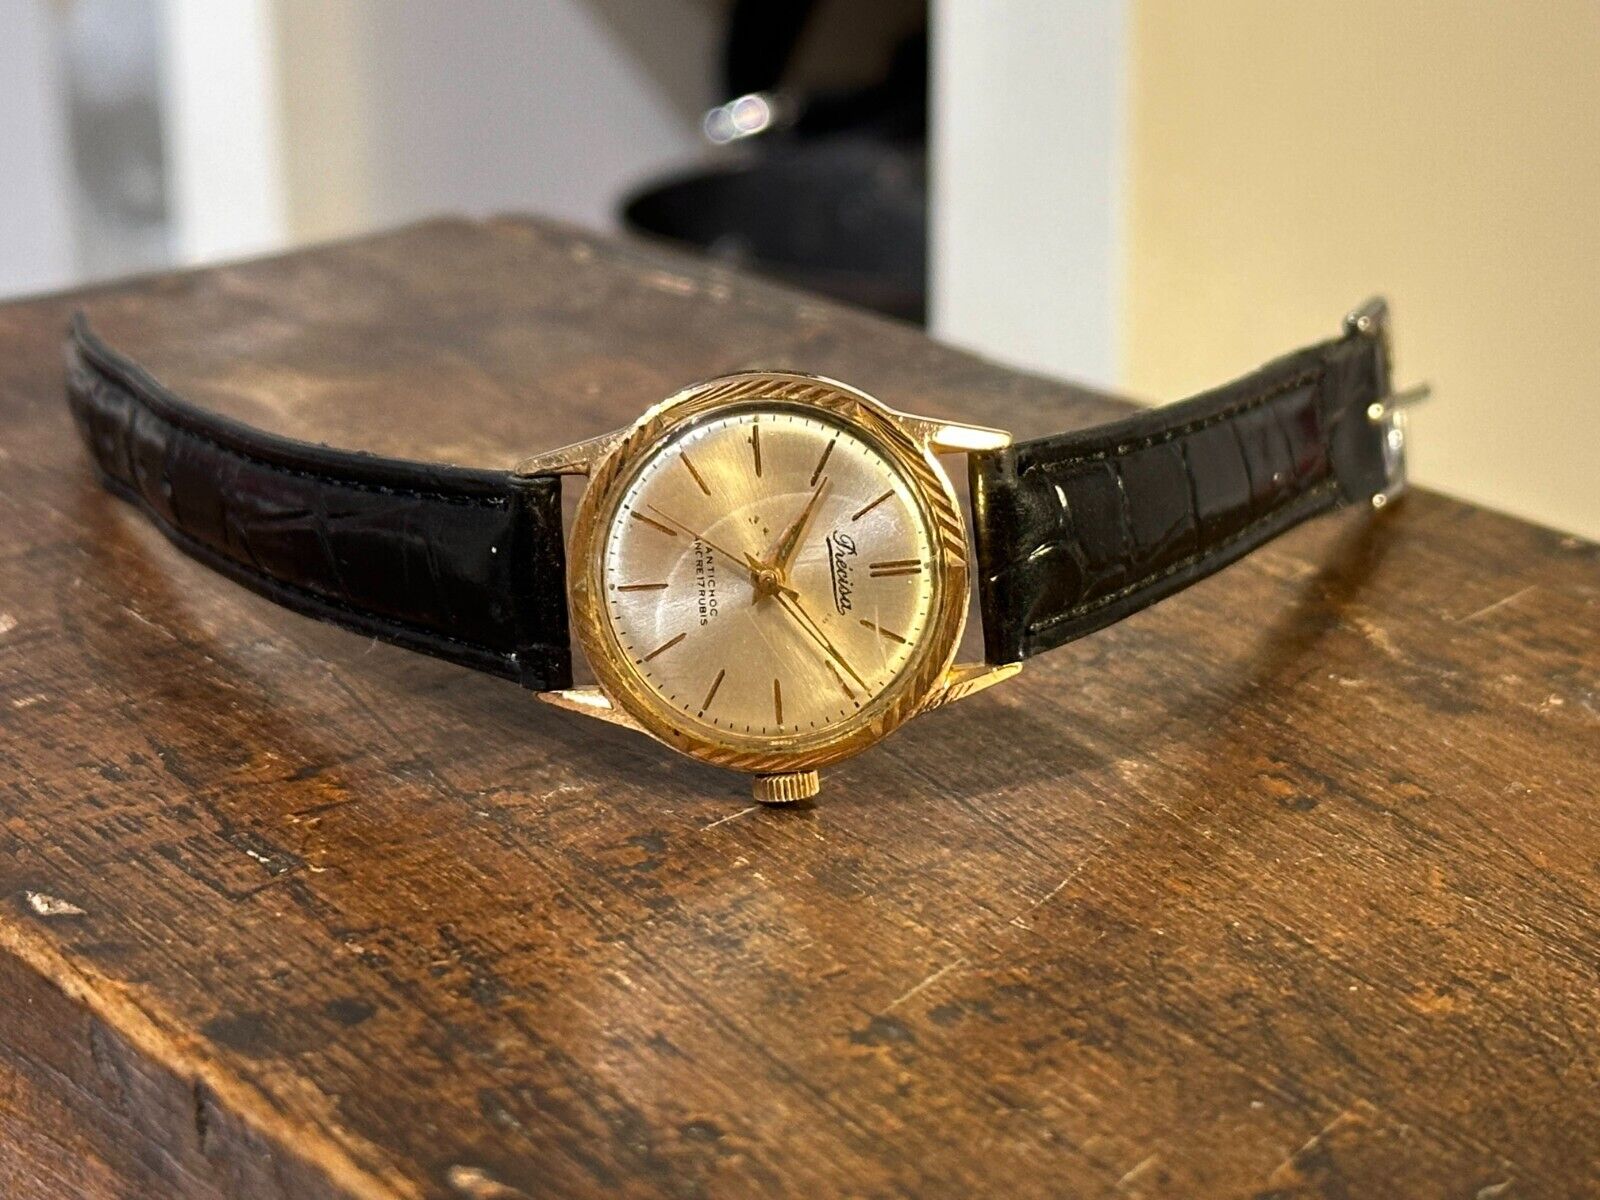 Precisa vintage midsize gold color 30mm unisex watch woman men